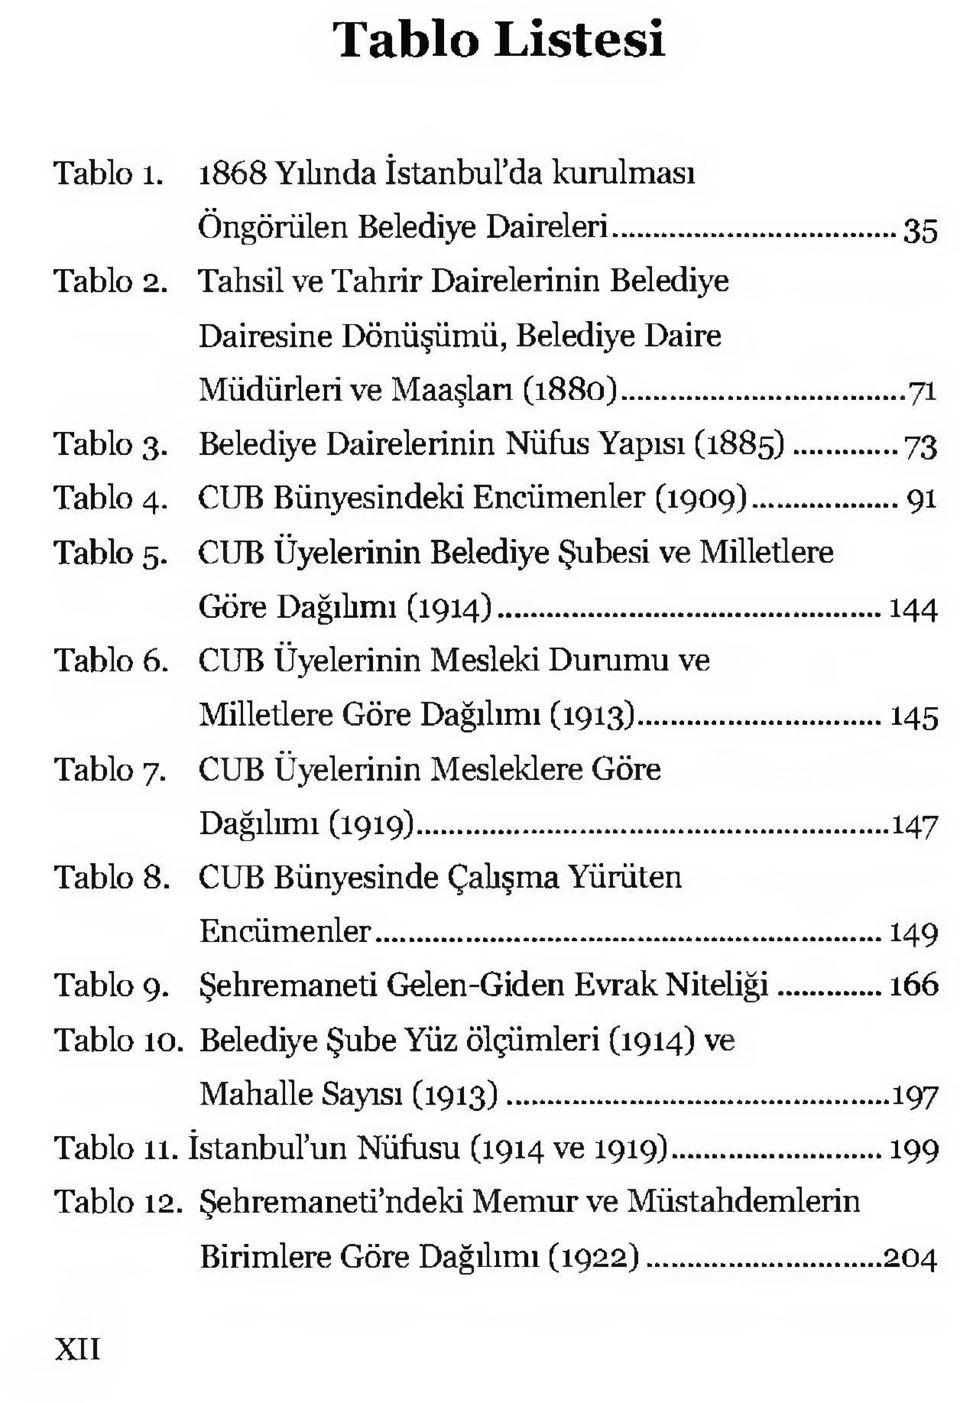 CUB Bünyesindeki Encümenler (1909)... 91 Tablo 5. CUB Üyelerinin Belediye Şubesi ve Milletlere Göre Dağılımı (1914)...144 Tablo 6. CUB Üyelerinin Mesleki Durumu ve Milletlere Göre Dağılımı (1913).